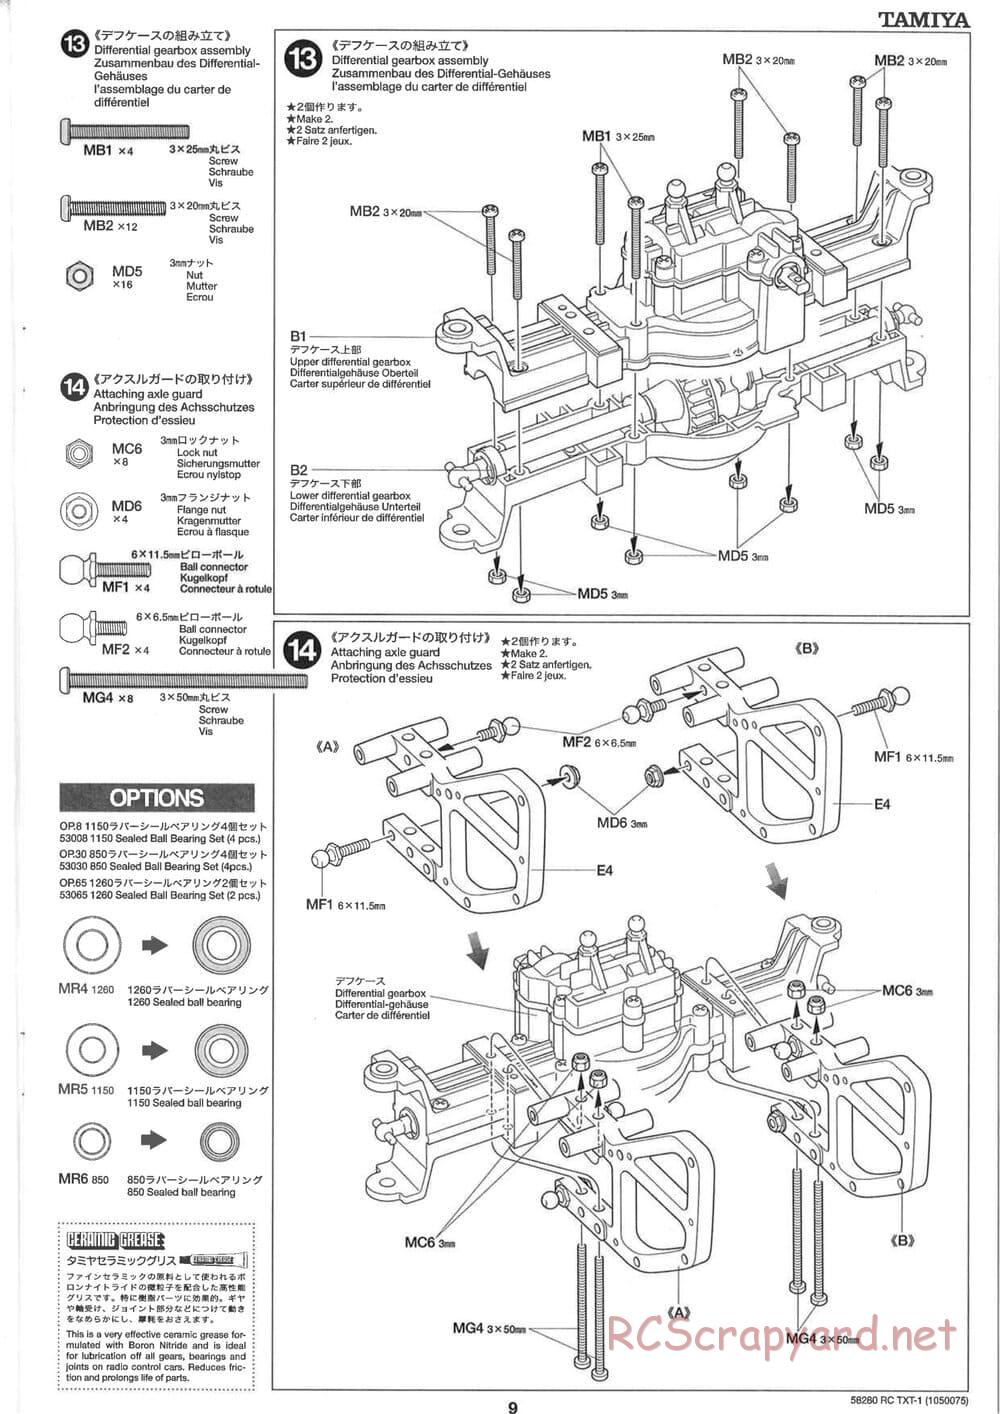 Tamiya - TXT-1 (Tamiya Xtreme Truck) Chassis - Manual - Page 9